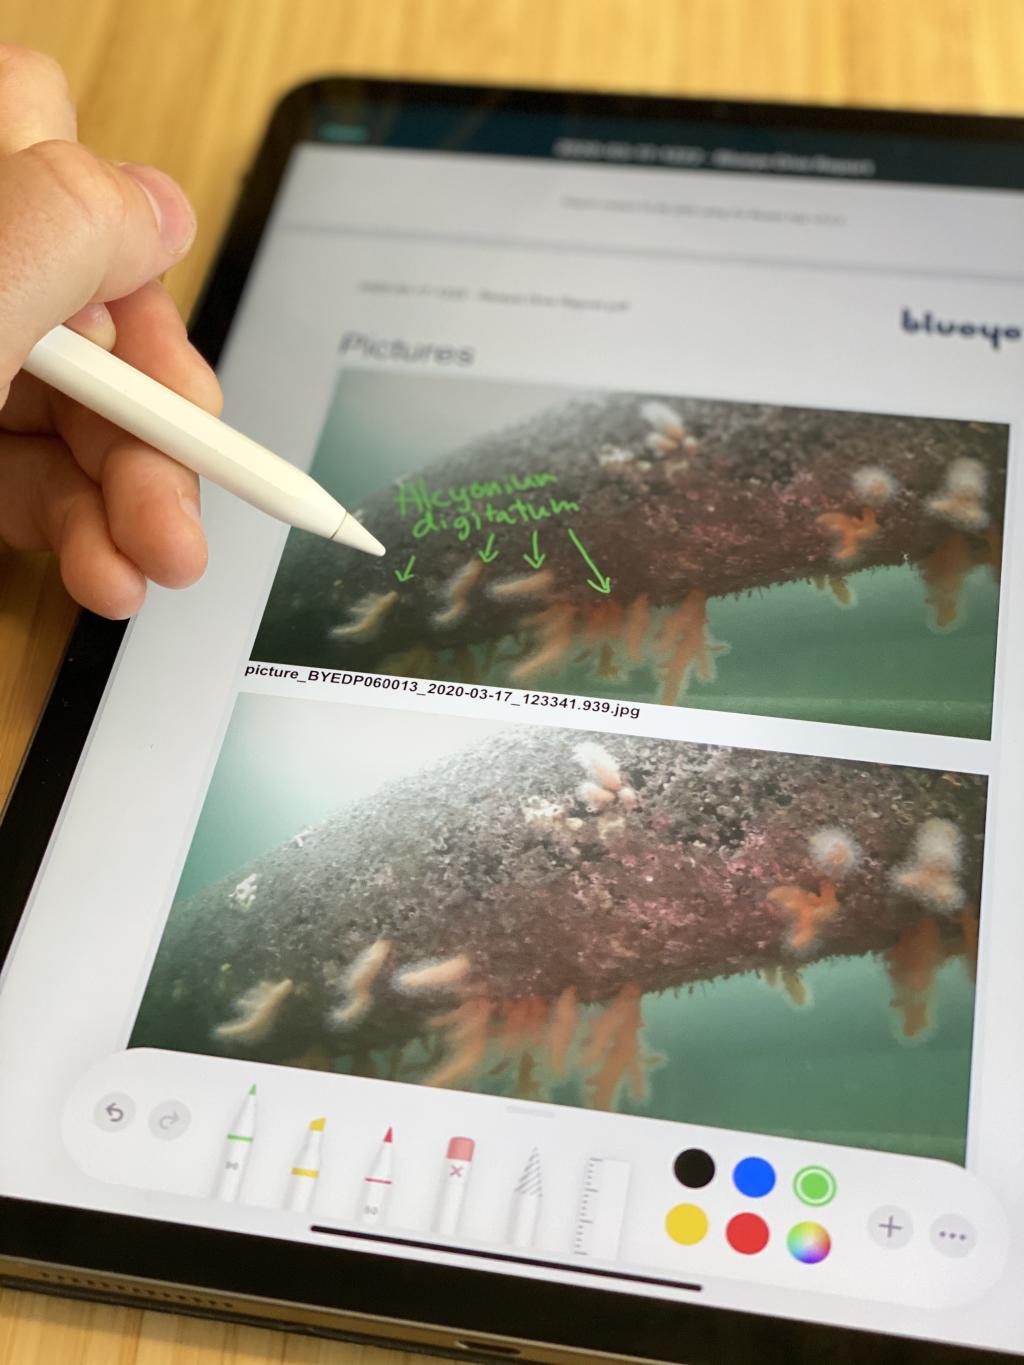 Du kan bruke en digital penn på iPad eller Android nettbrett til å tegne eller notere direkte i rapporten.